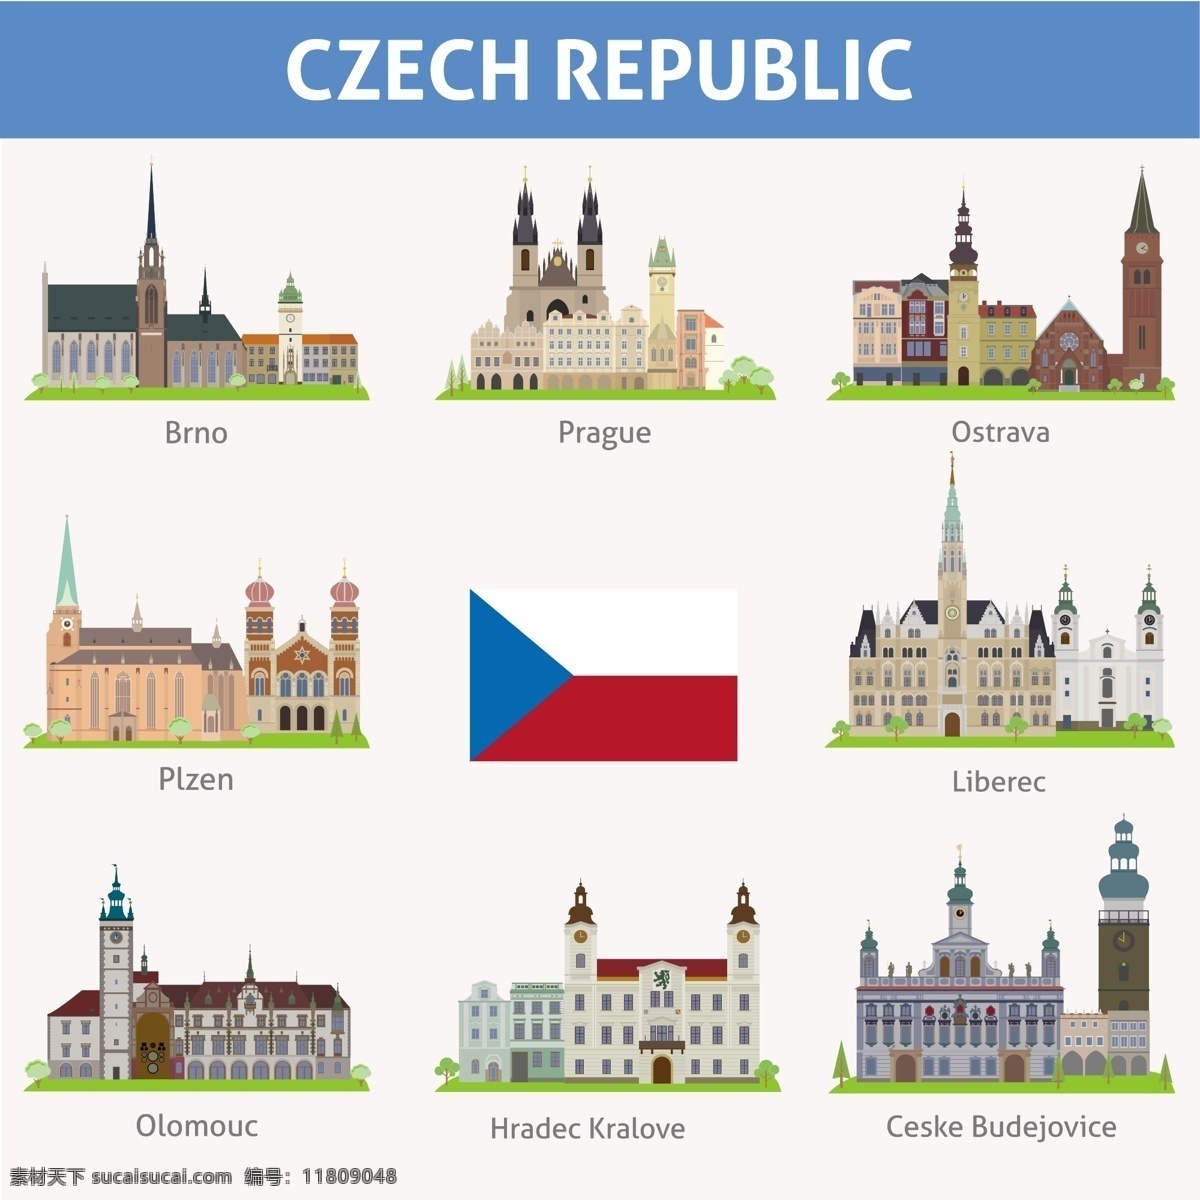 捷克共和国 建筑 图标 国旗 建筑图案 著名建筑 建筑图标 城市图标 房产广告 矢量素材 白色